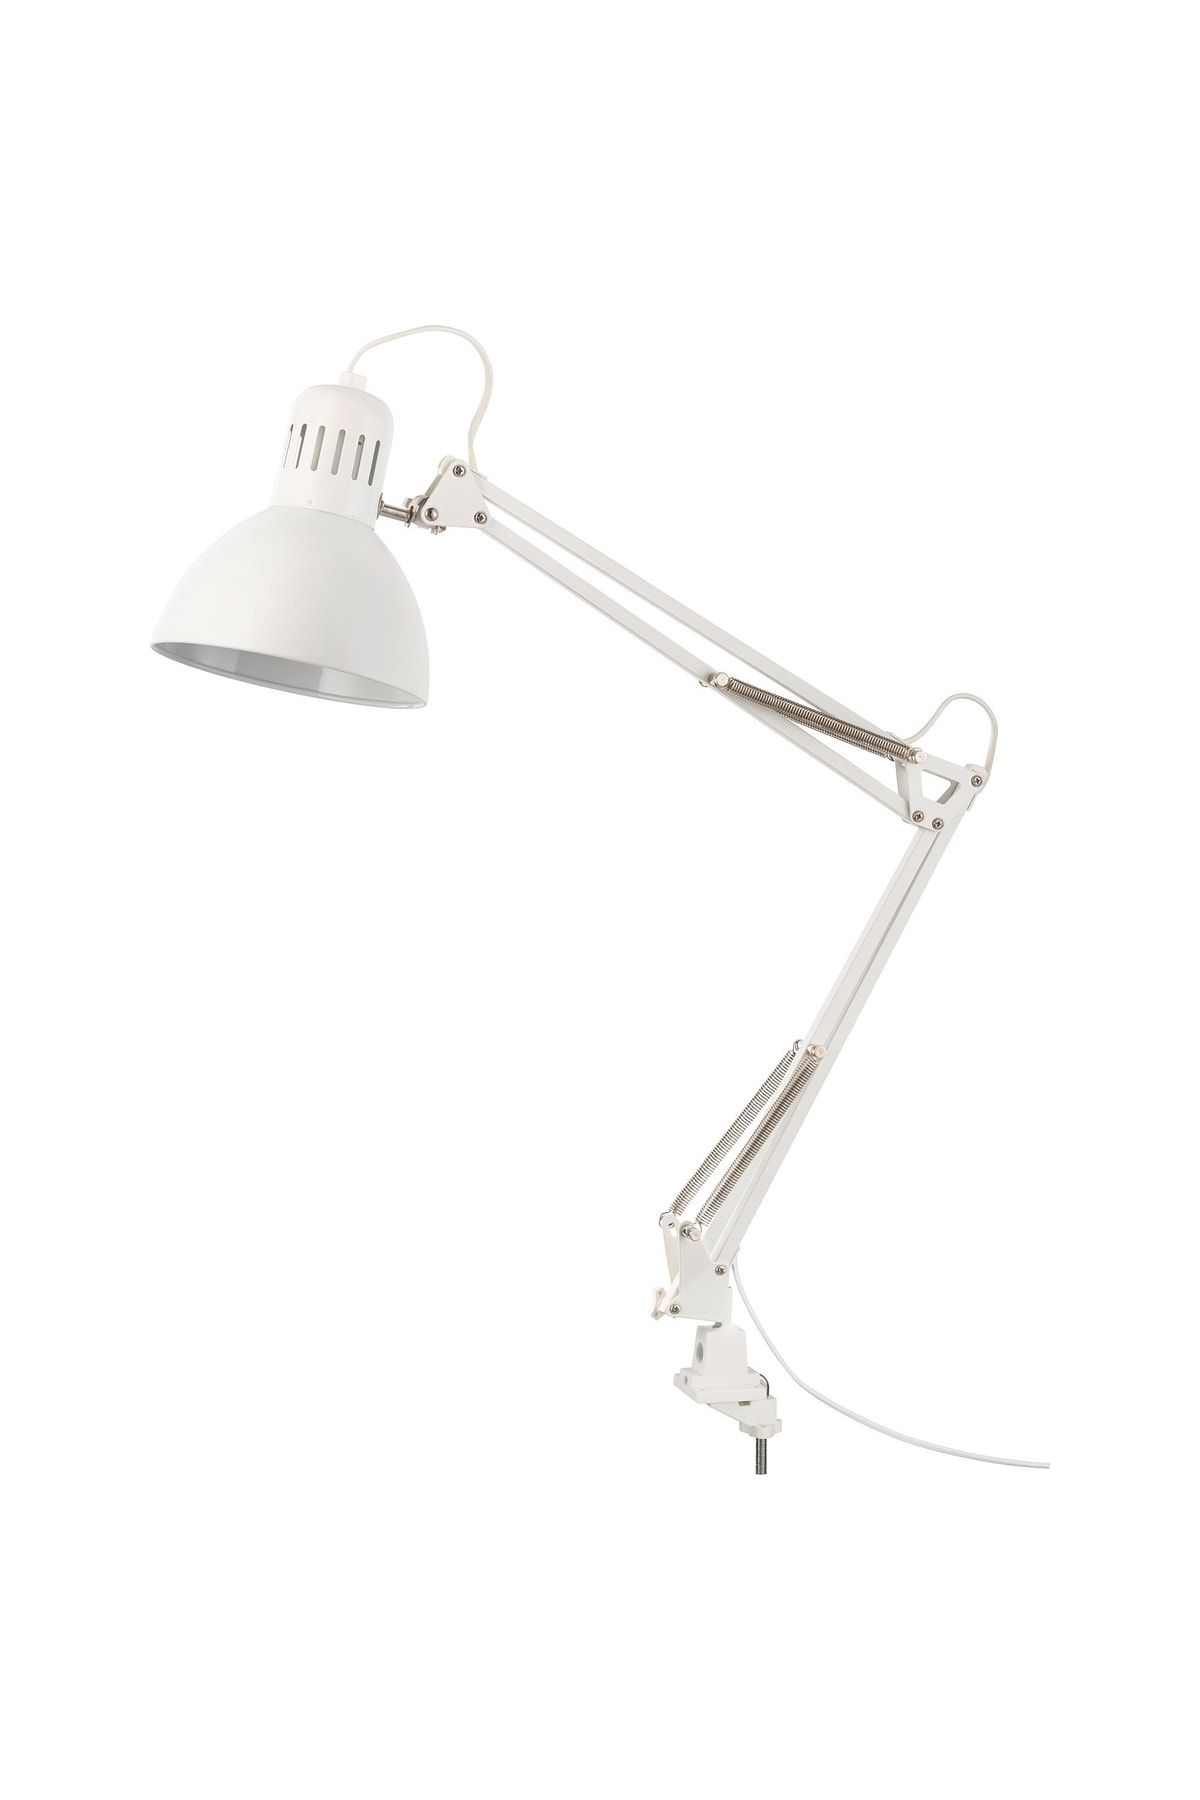 IKEA Masaya Takılabilir Çalışma Lambası Abajur Çapı: 17 Cm Masa Lambası Beyaz Çelik Lamba